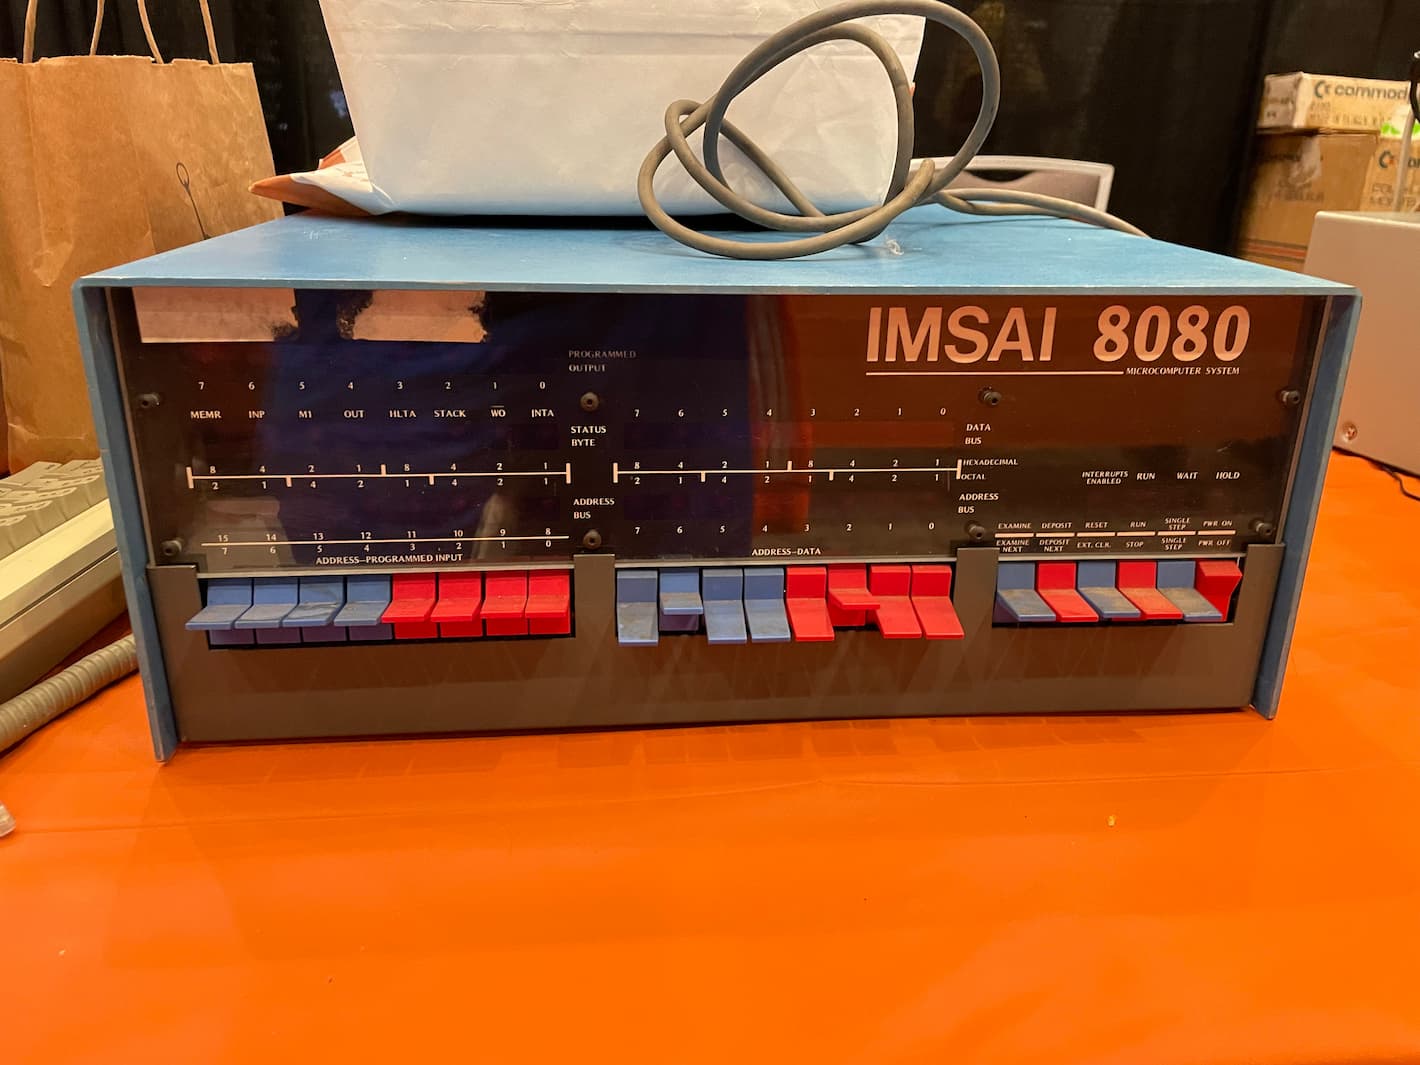 An IMSAI 8080.